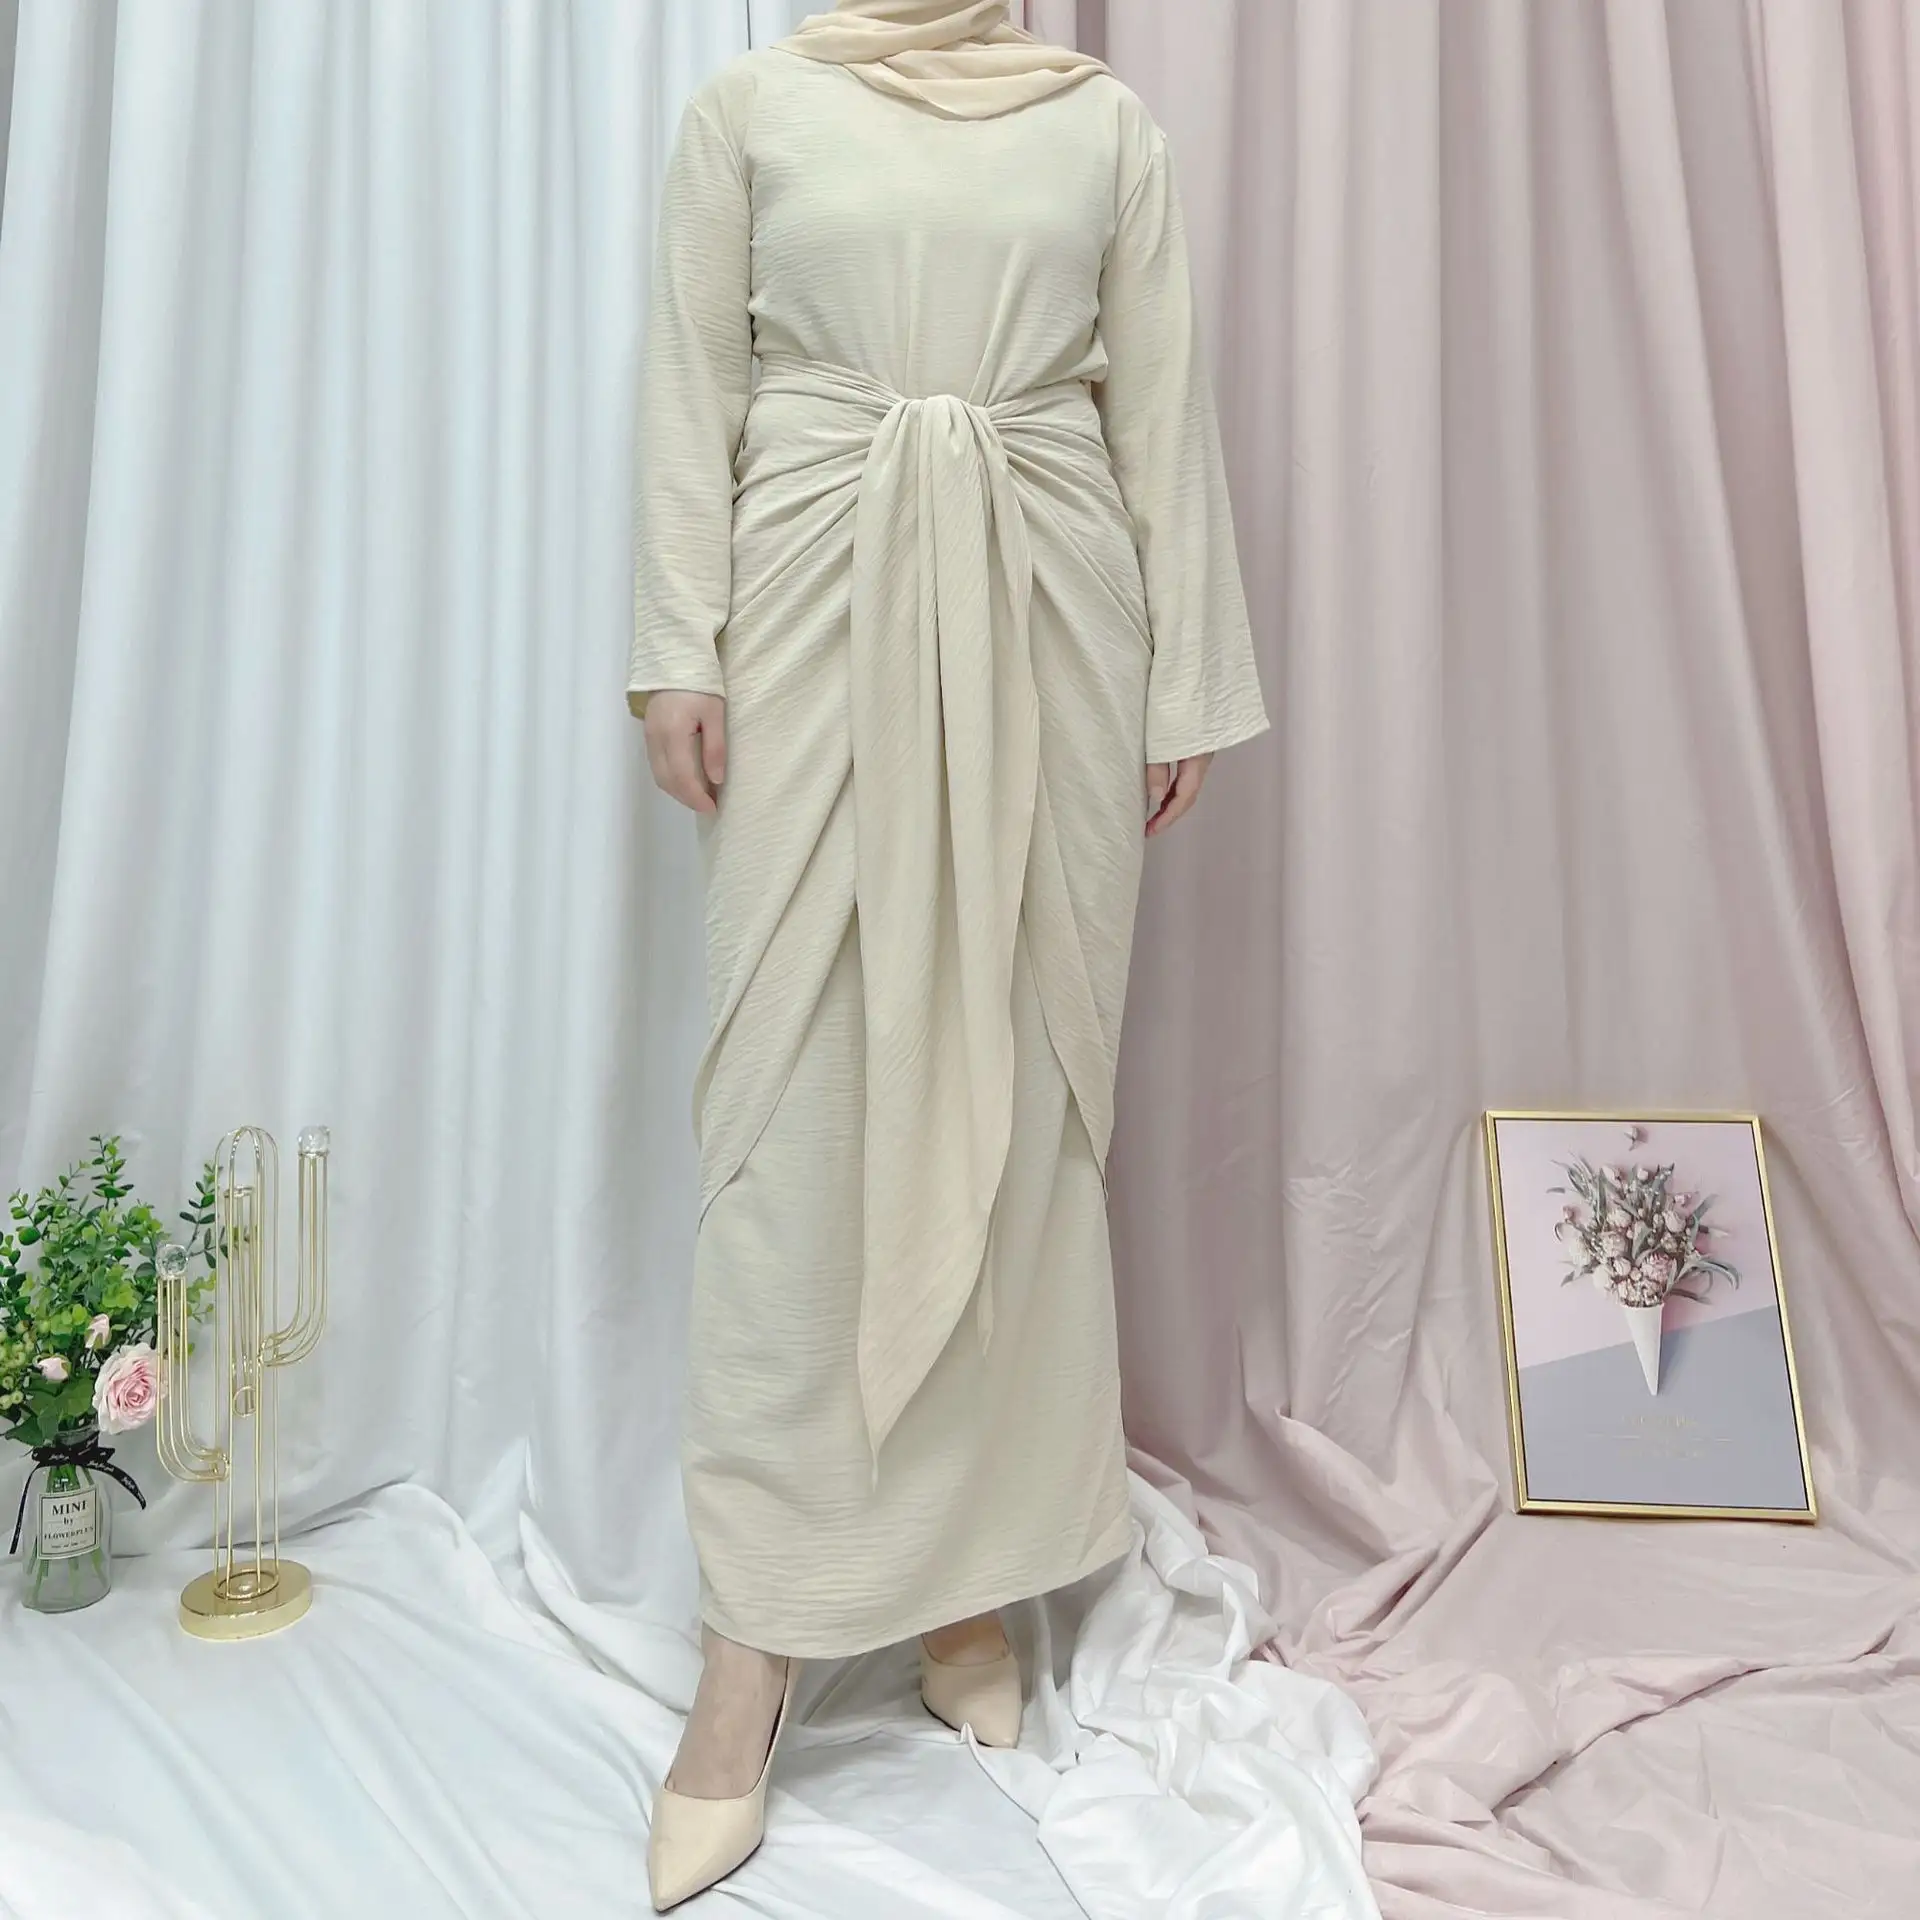 Son kadınsı katı kendinden kemer ön kadın müslüman uzun elbise Dubai saten tunik elbise kat uzunluk düz boyalı doğal bel